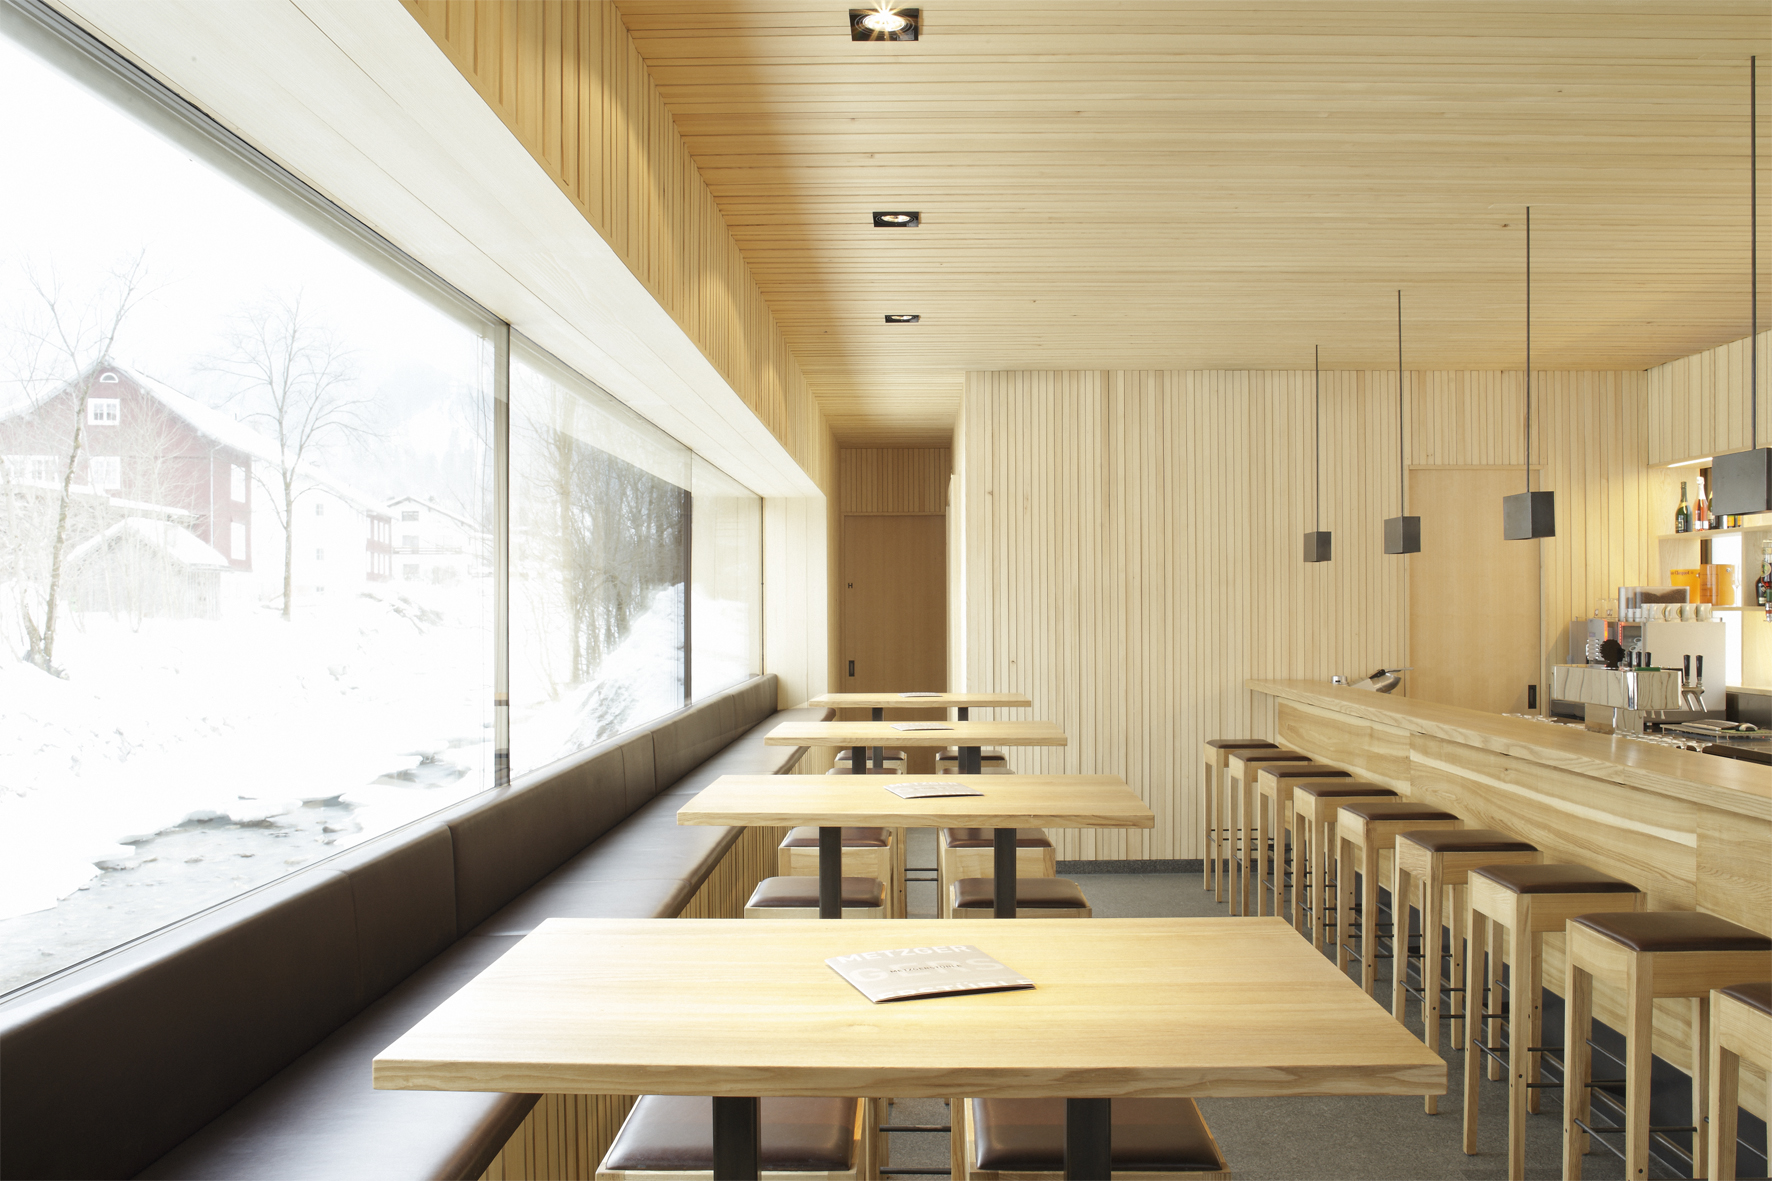 дизайн интерьера придорожного кафе